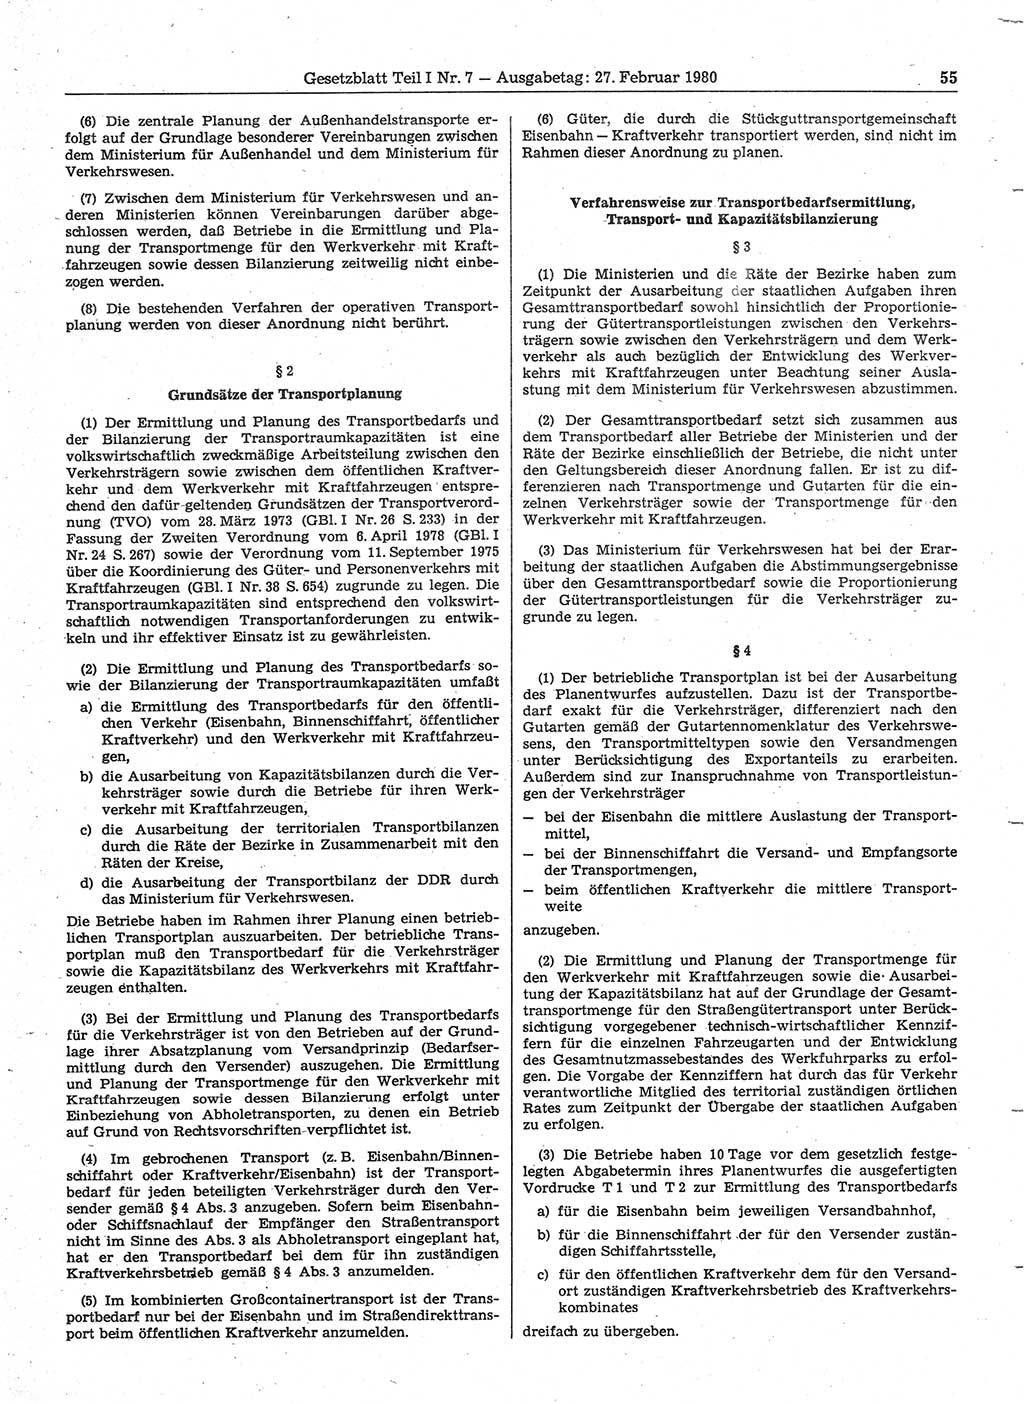 Gesetzblatt (GBl.) der Deutschen Demokratischen Republik (DDR) Teil Ⅰ 1980, Seite 55 (GBl. DDR Ⅰ 1980, S. 55)